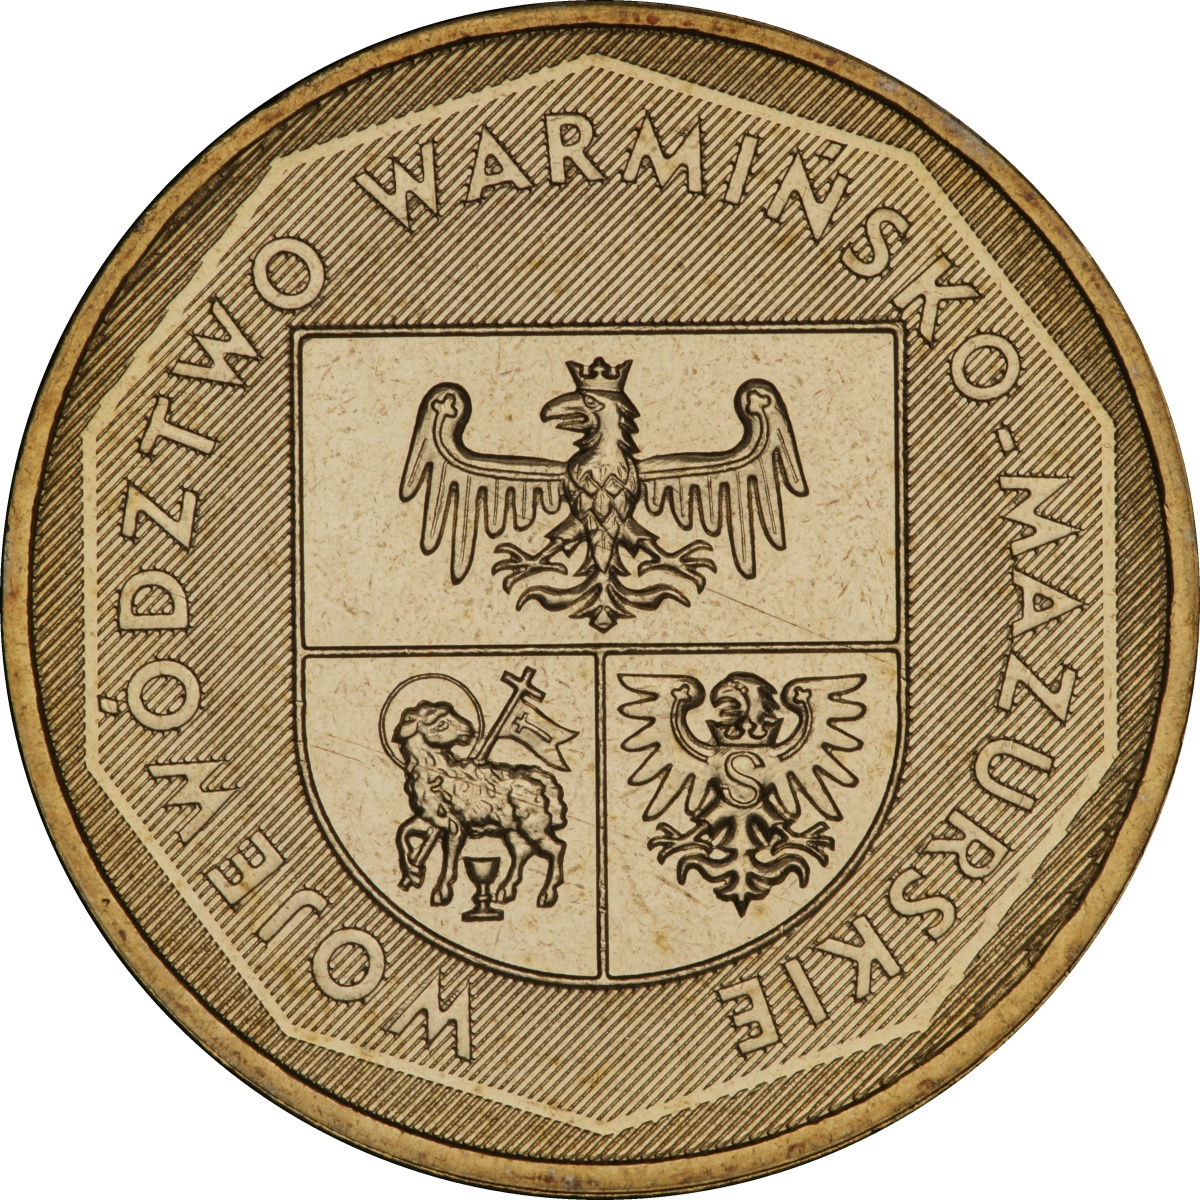 2zl-okolicznosciowe-wojewodztwo-warminsko-mazurskie-rewers-monety